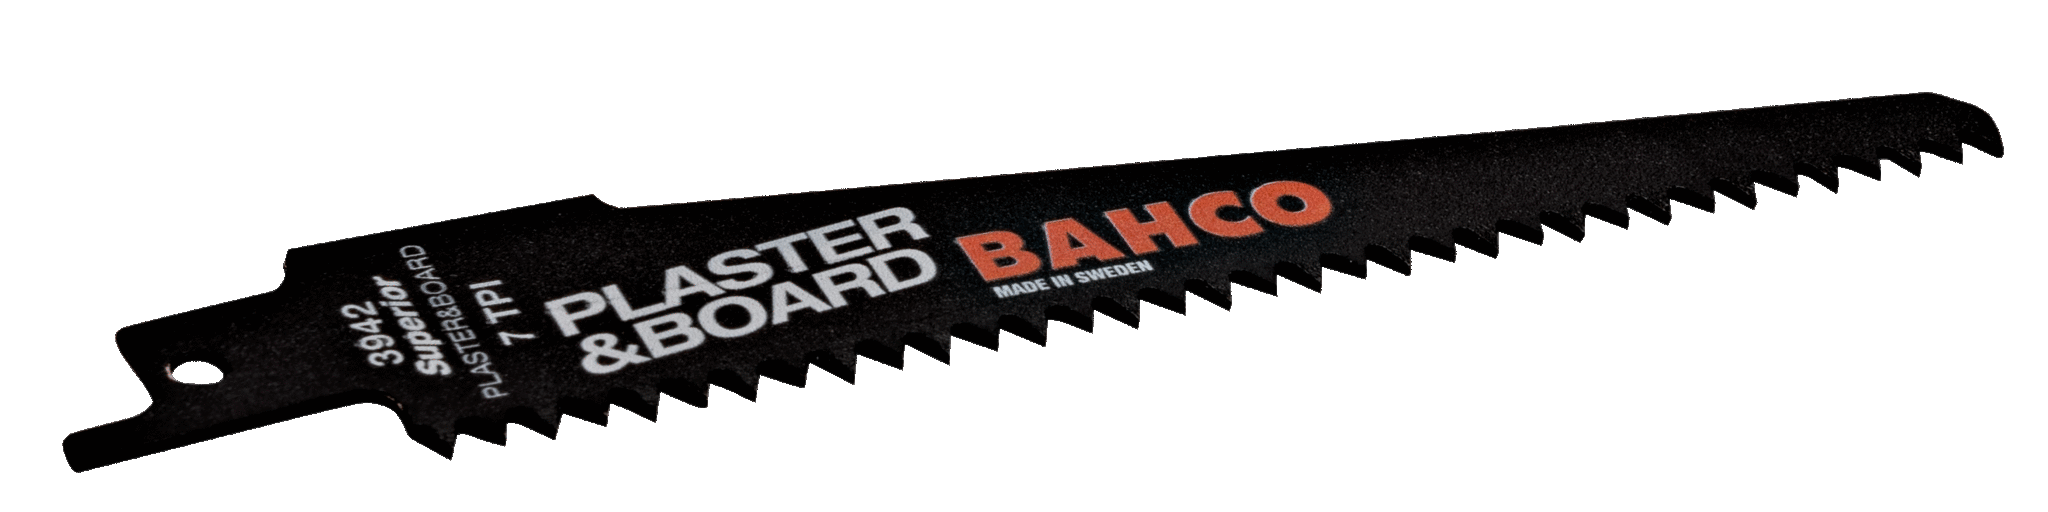 Bahco Sandflex® tigersågblad för gips och trä, 7 tdr/tum - 228 mm - 2 st/förpackning